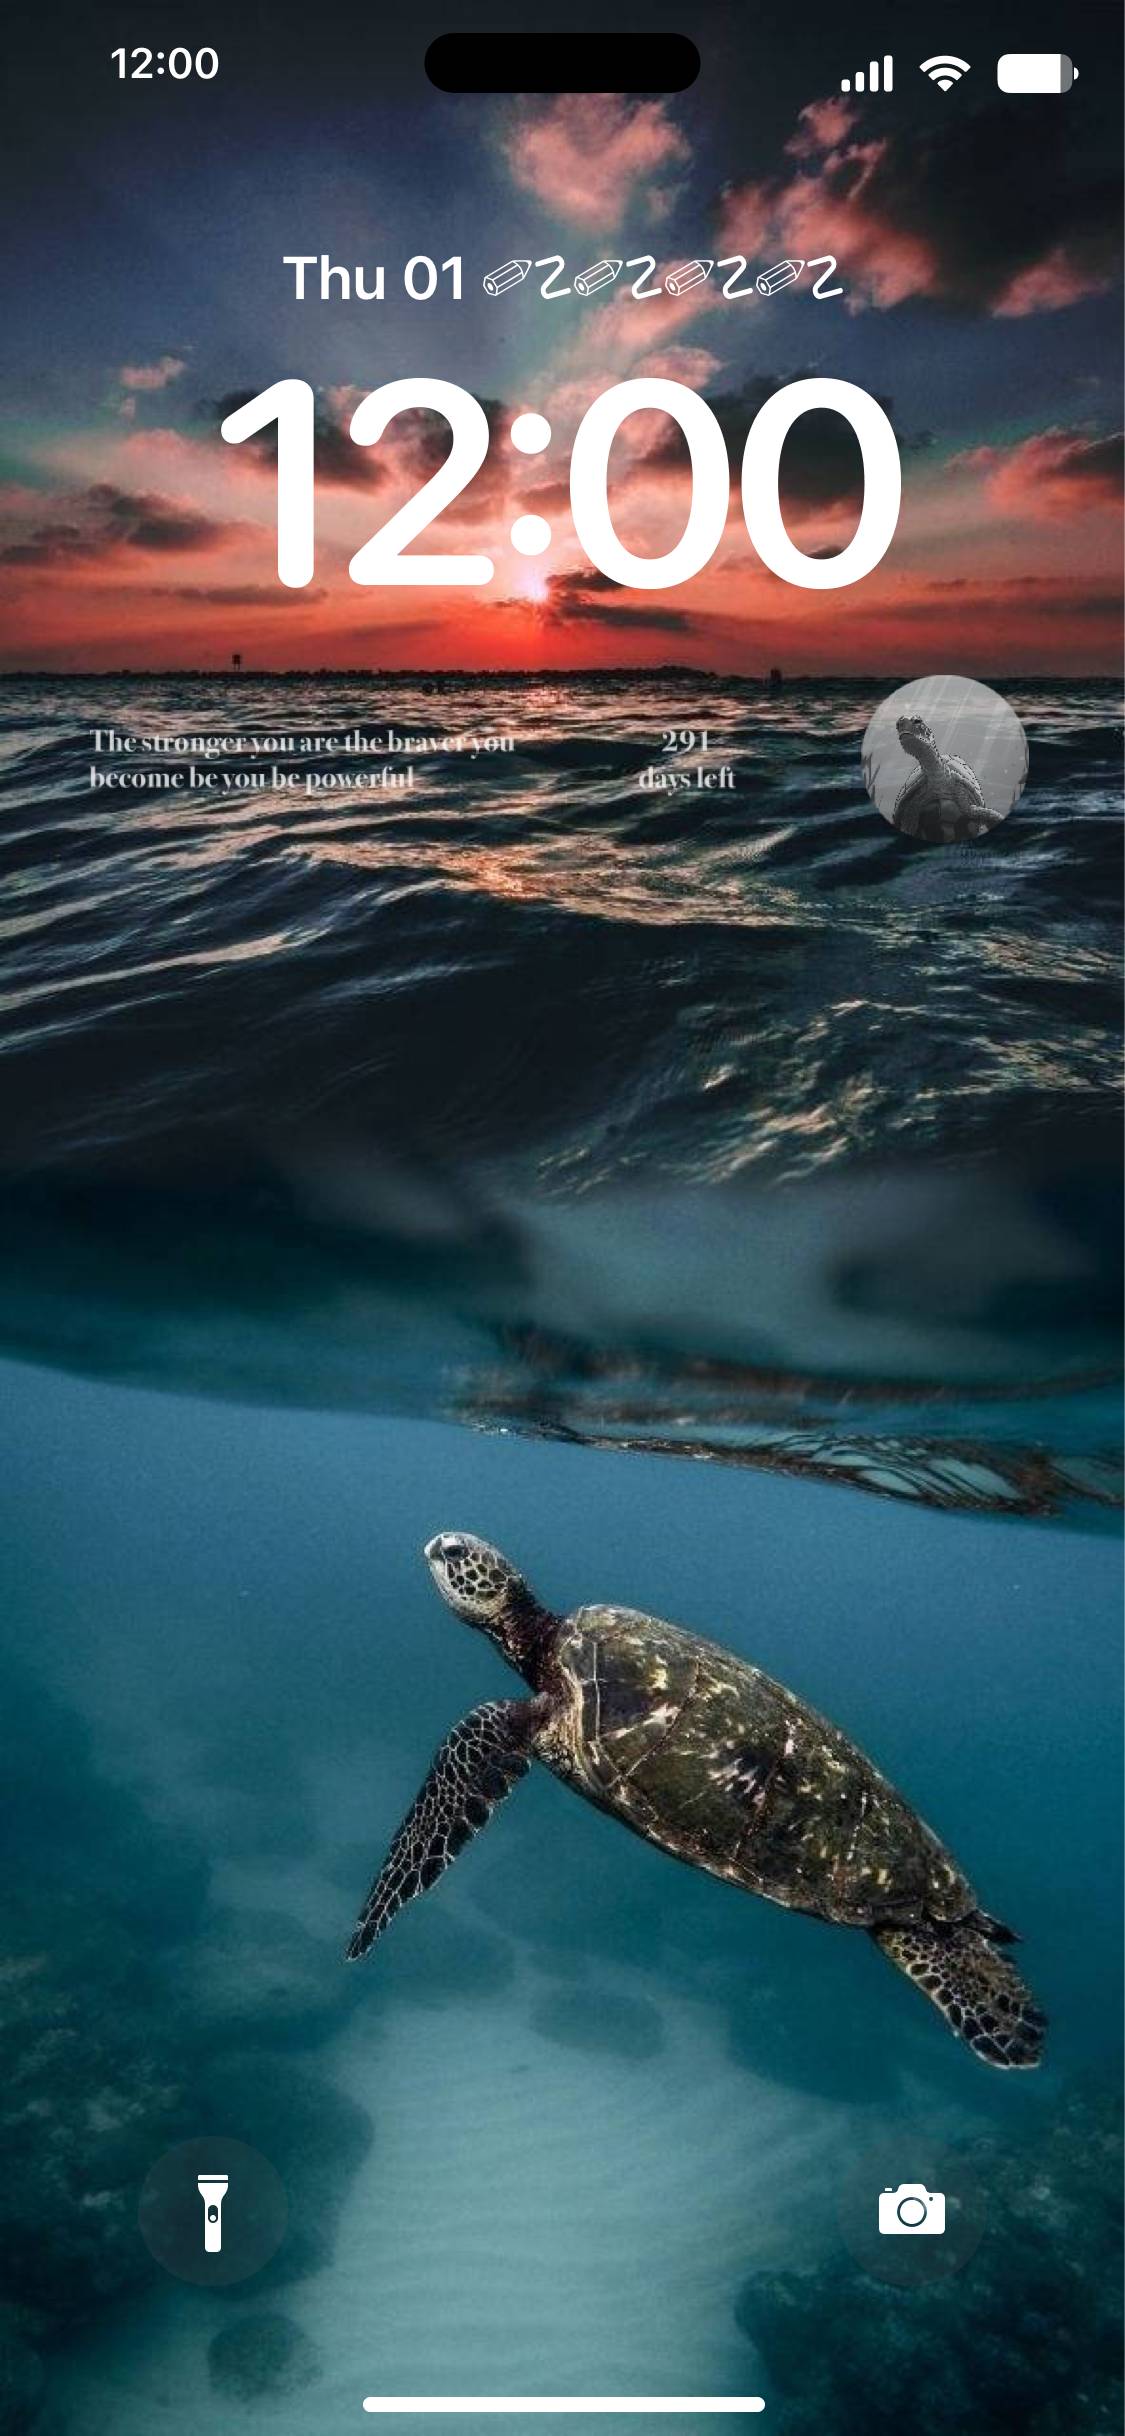 Sea Turtle Écran verrouillé[2FKfzx19Tg9TZGcxJuqL]